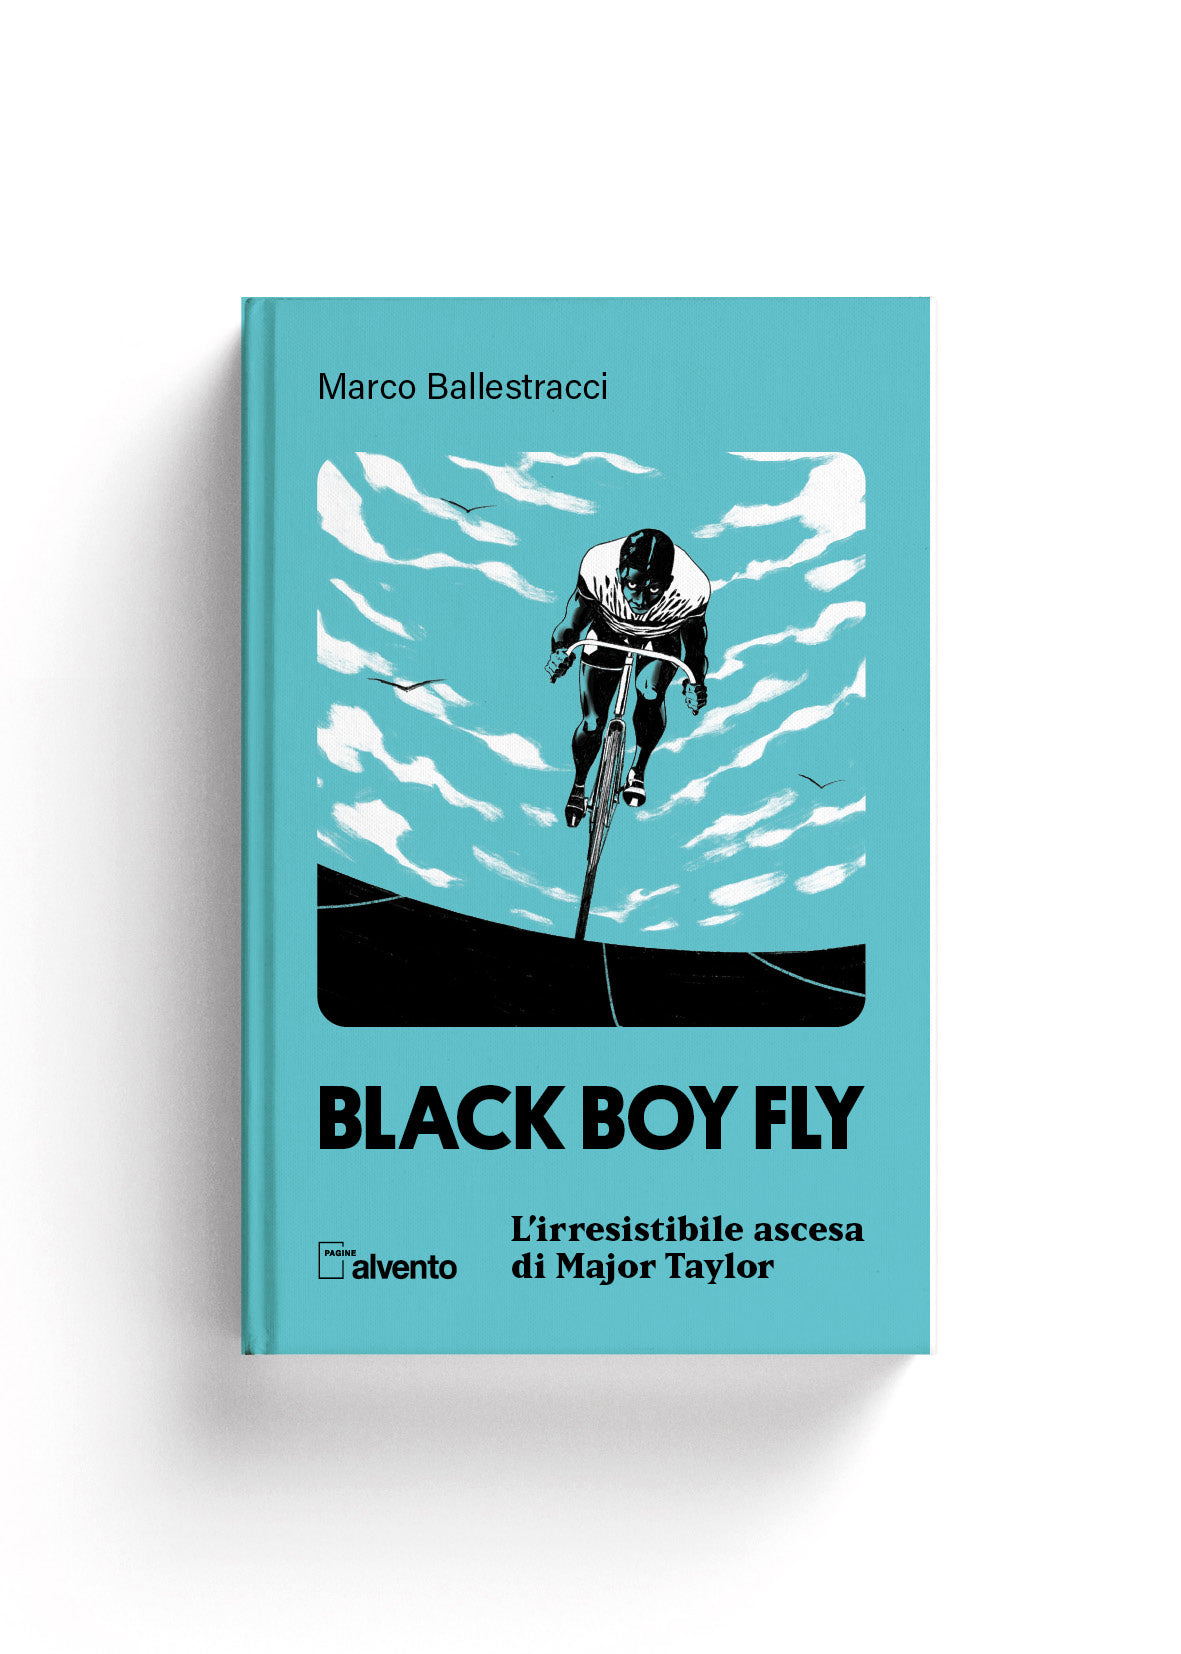 Black boy fly